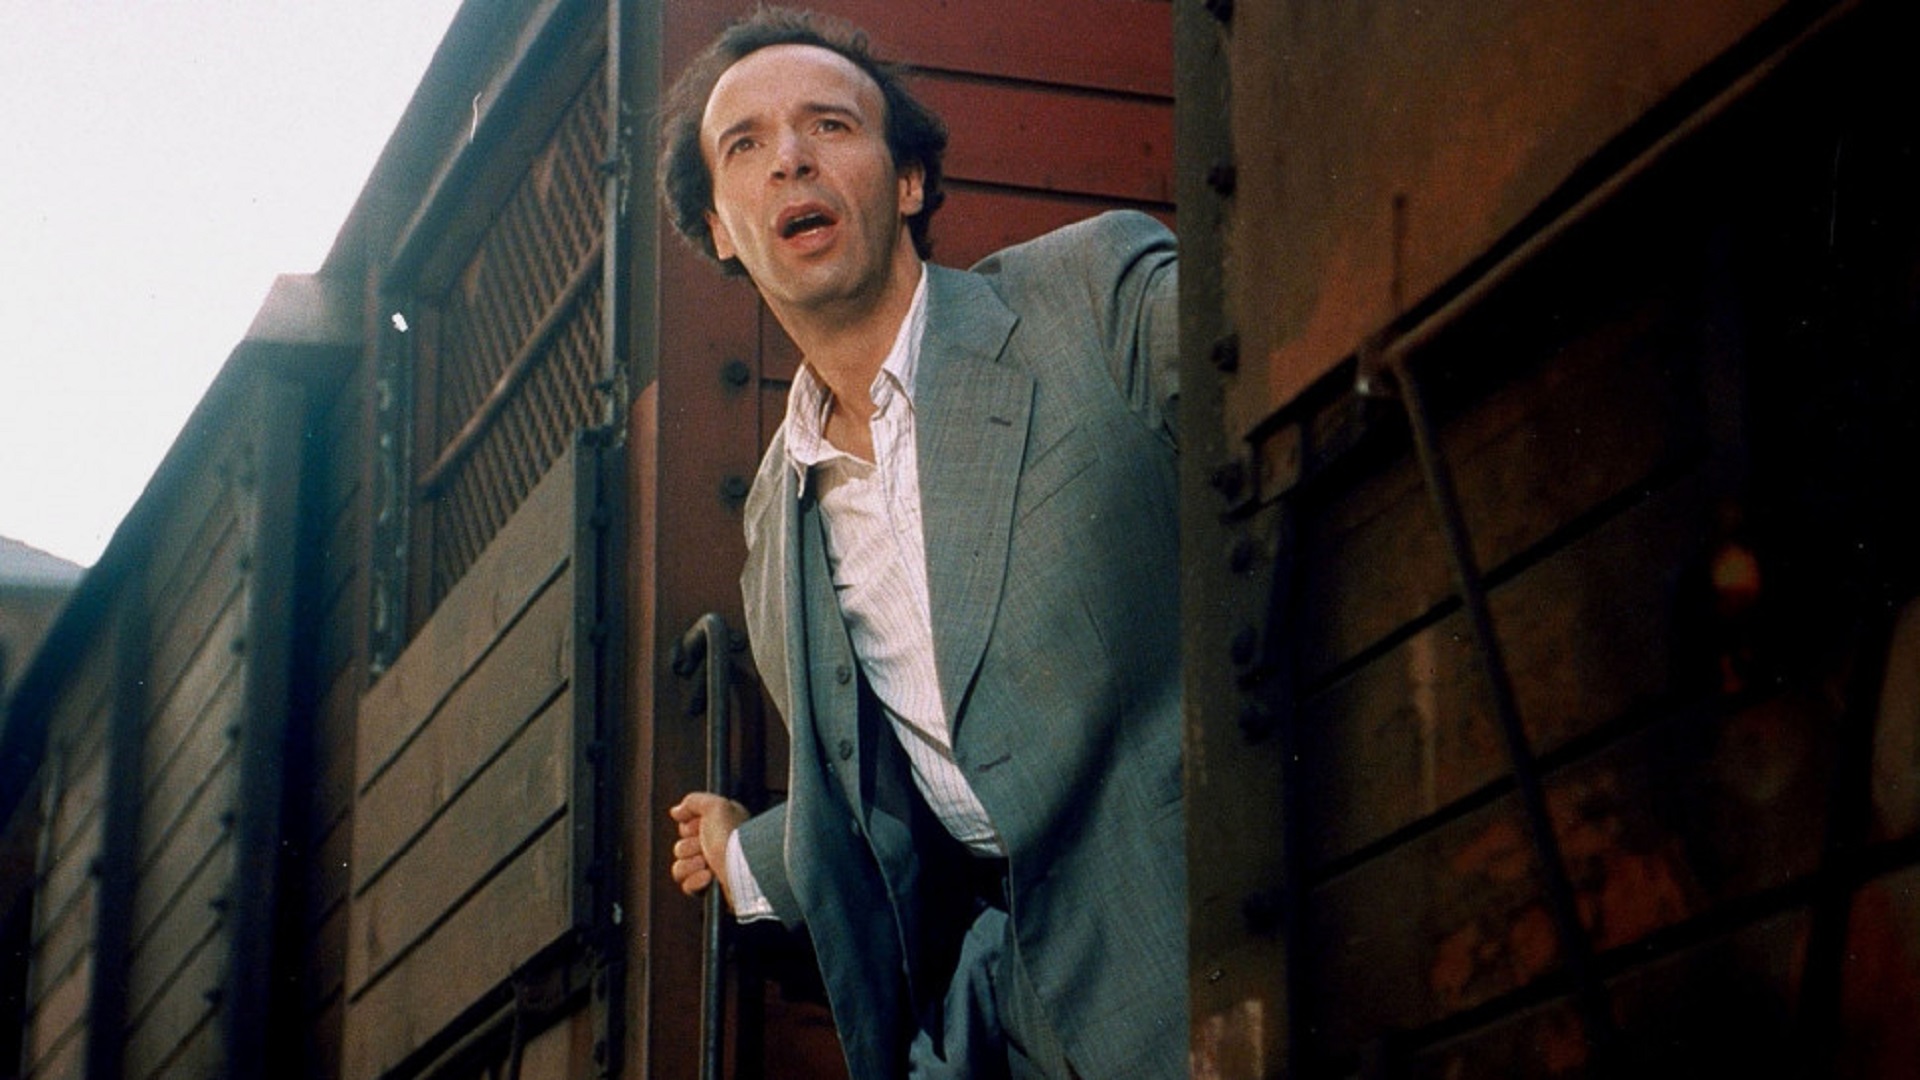 روبرتو بنینی در نقش گوئیدو در حال سوار شدن به قطار در فیلم زندگی زیباست